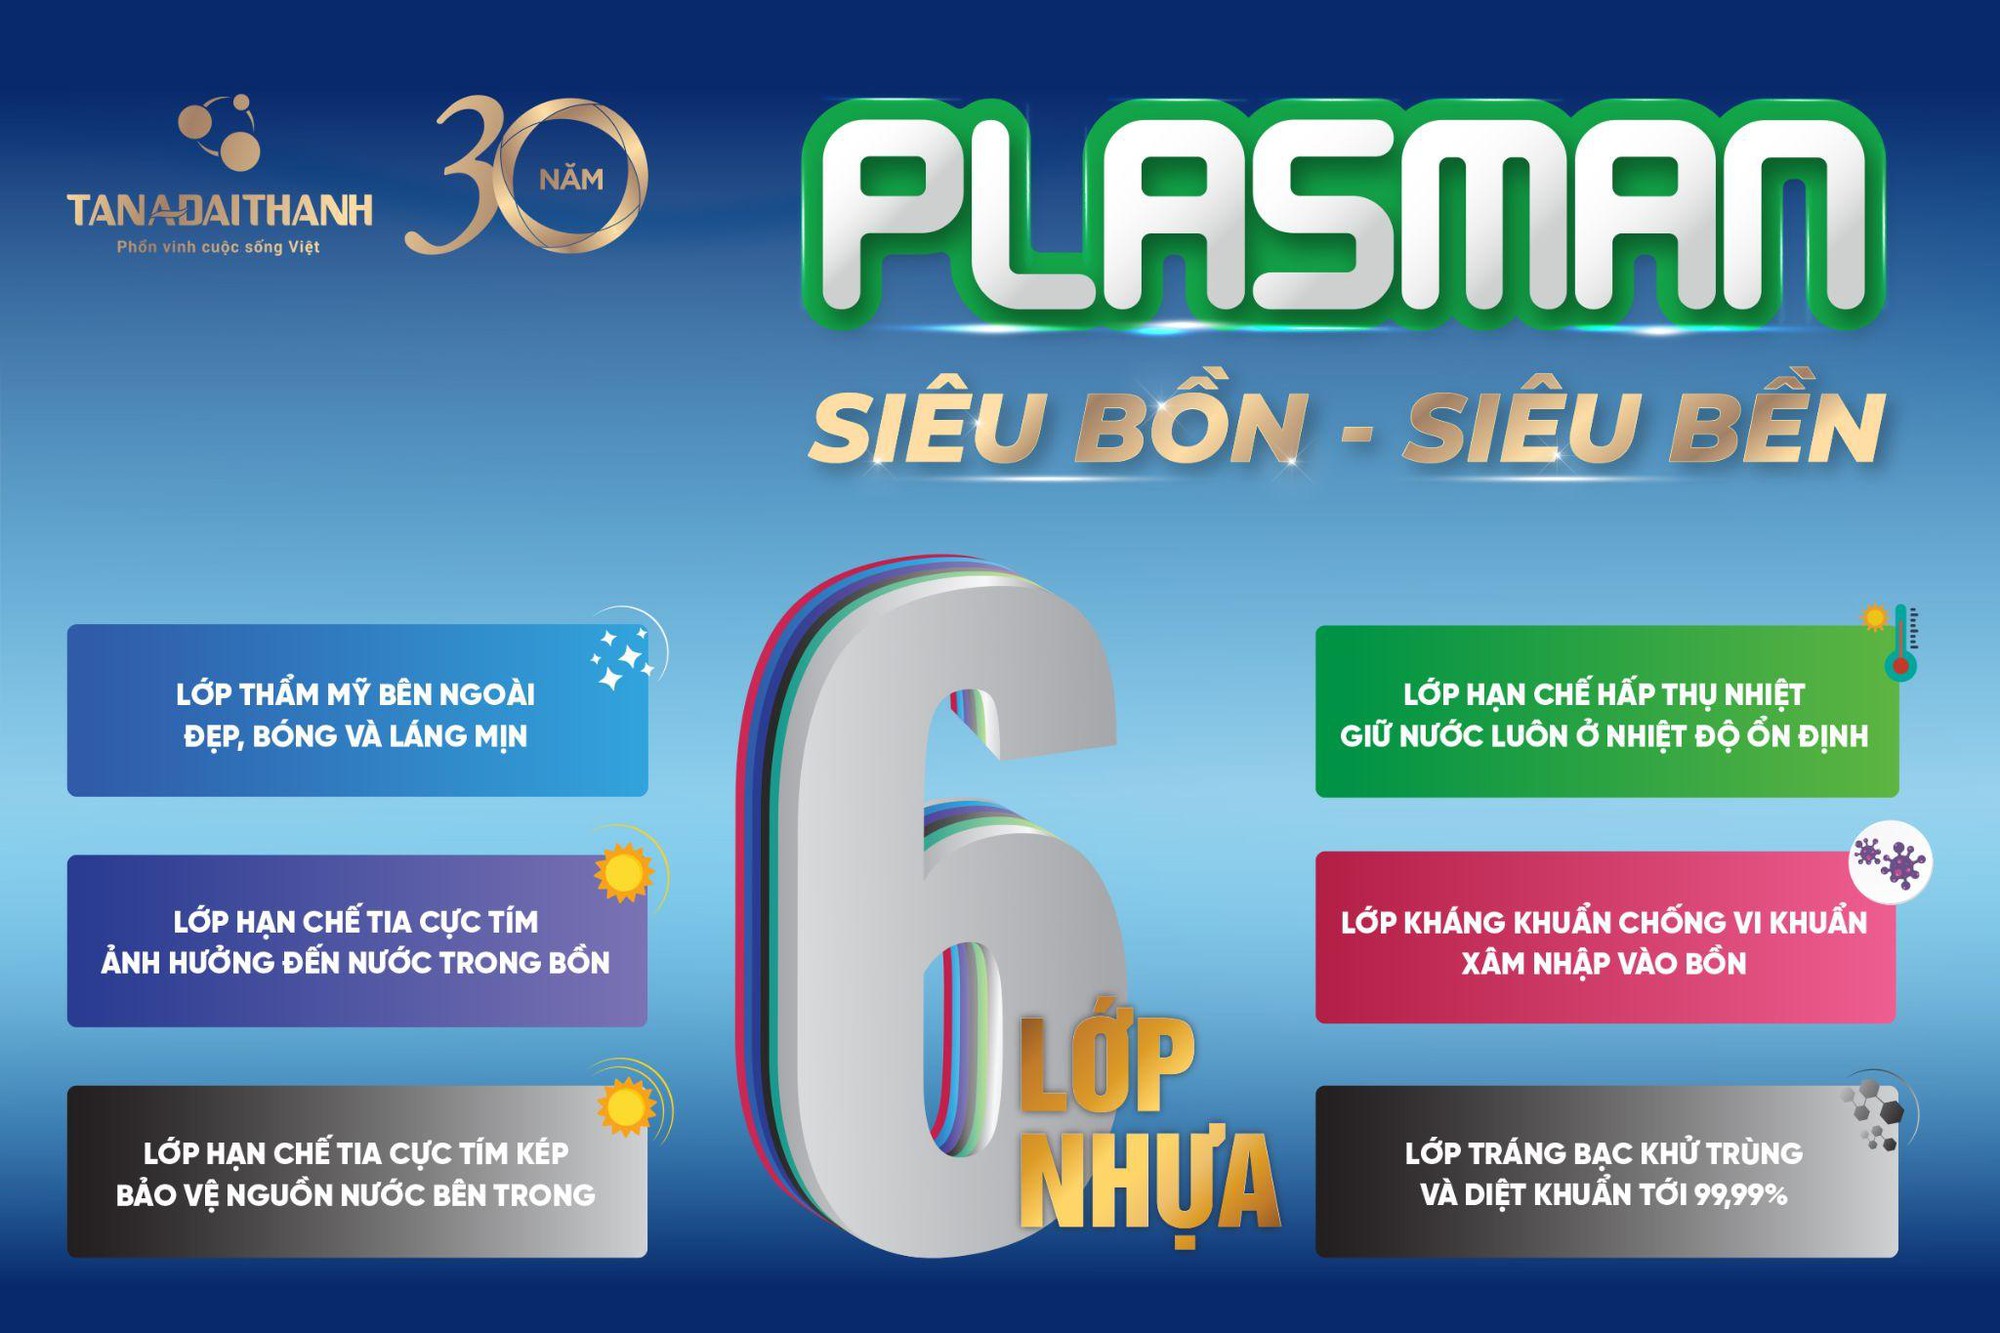 “Thử thách độ bền cùng siêu bồn Plasman” gây ấn tượng đặc biệt - Ảnh 6.